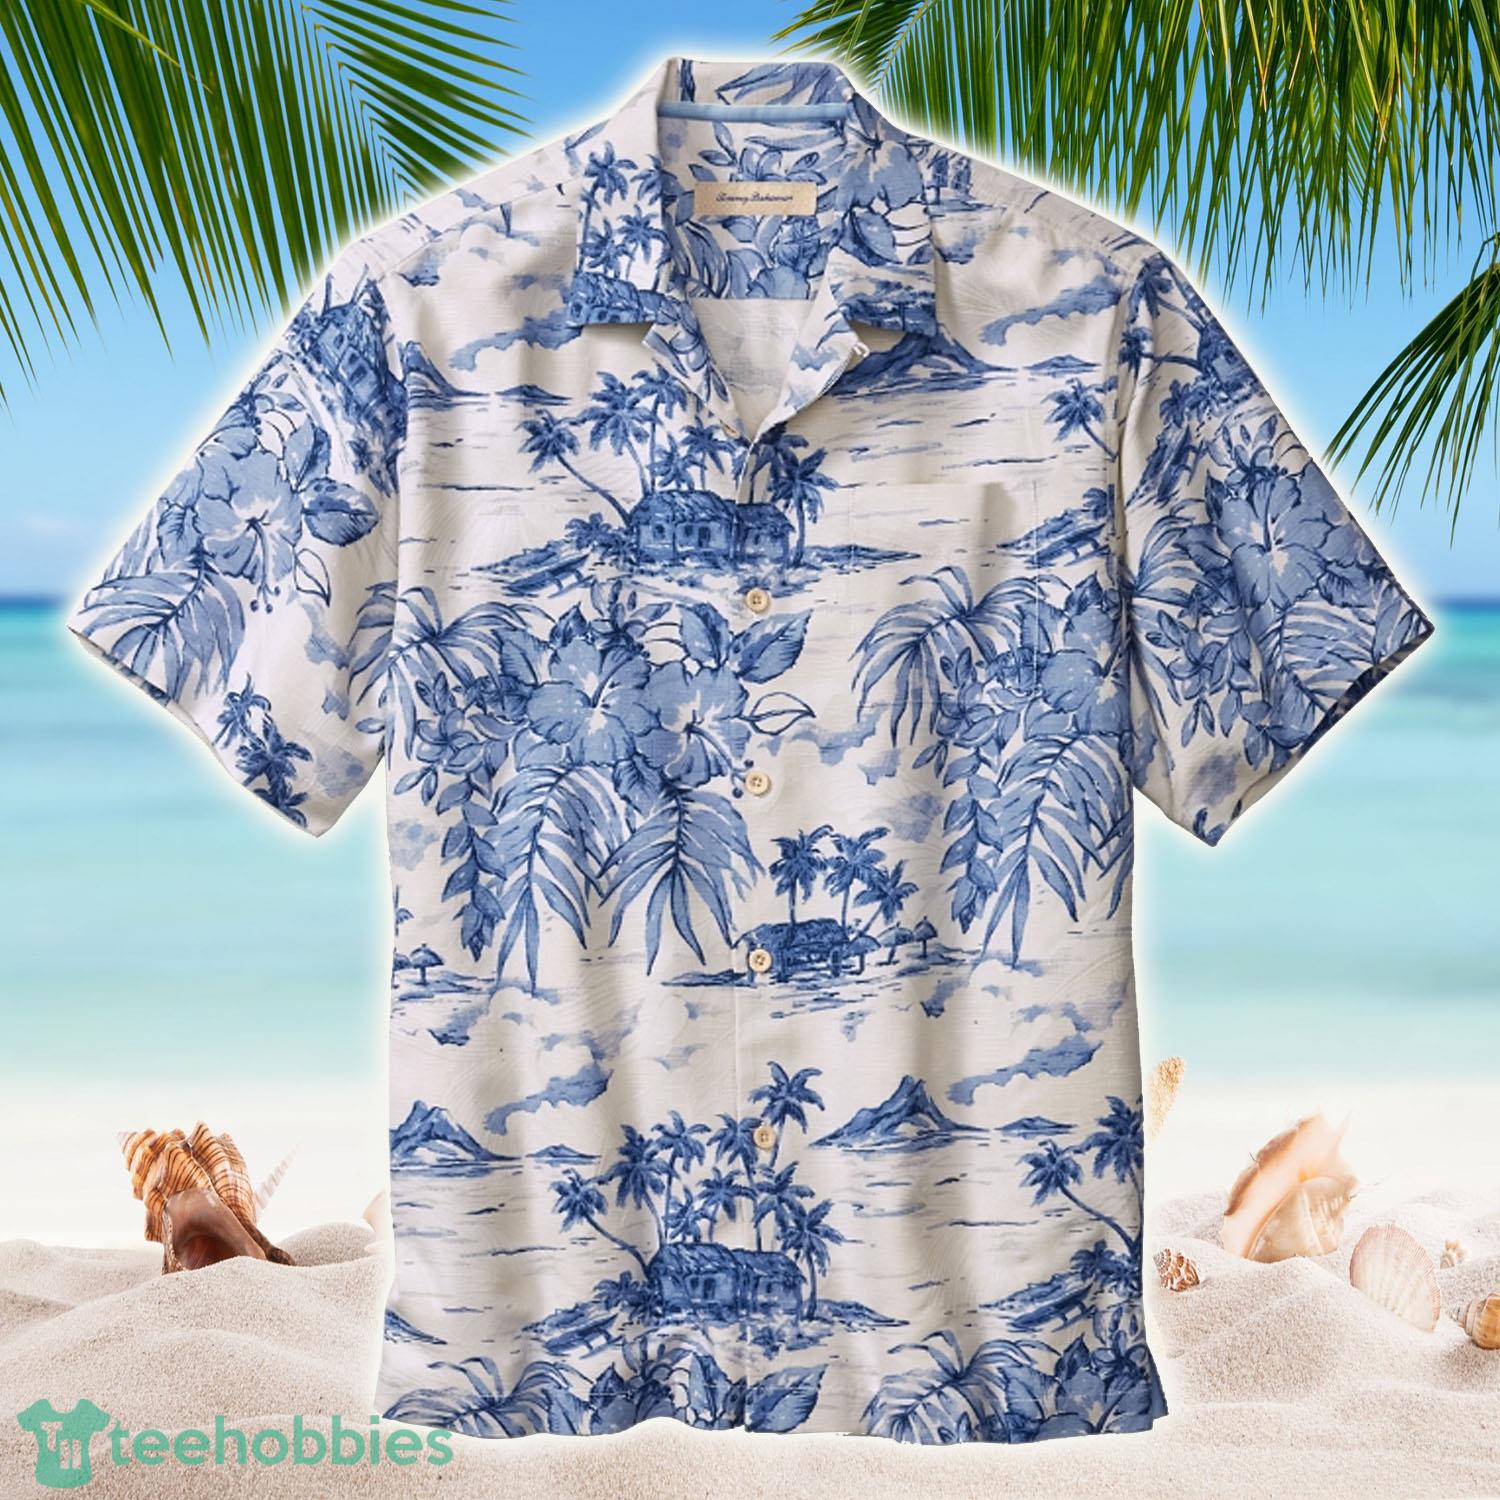 https://image.teehobbies.us/2022/12/tommy-bahama-summer-hawaii-shirts.jpg